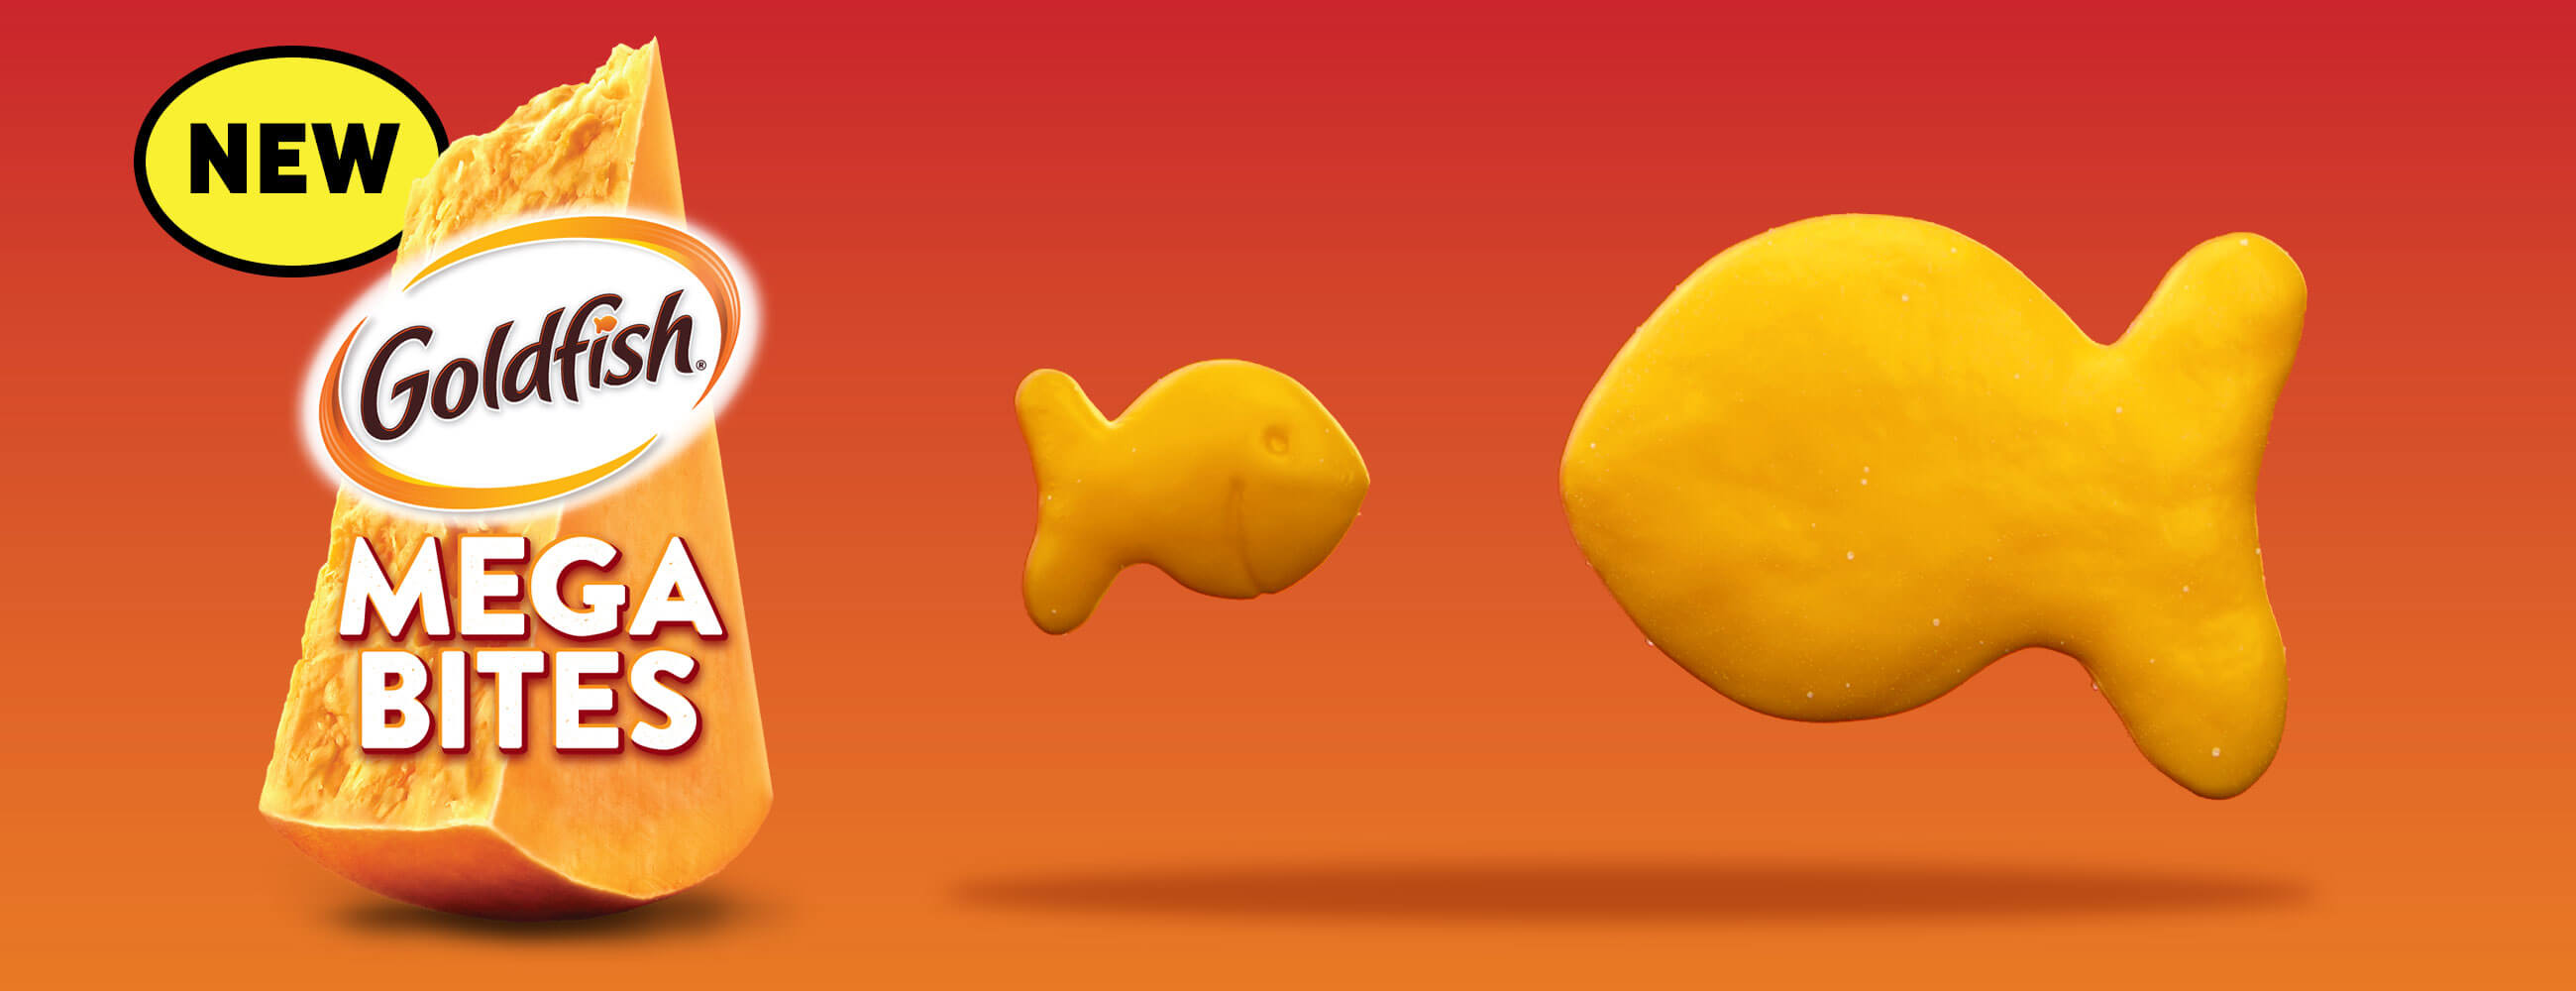 NEW Goldfish® Mega Bites